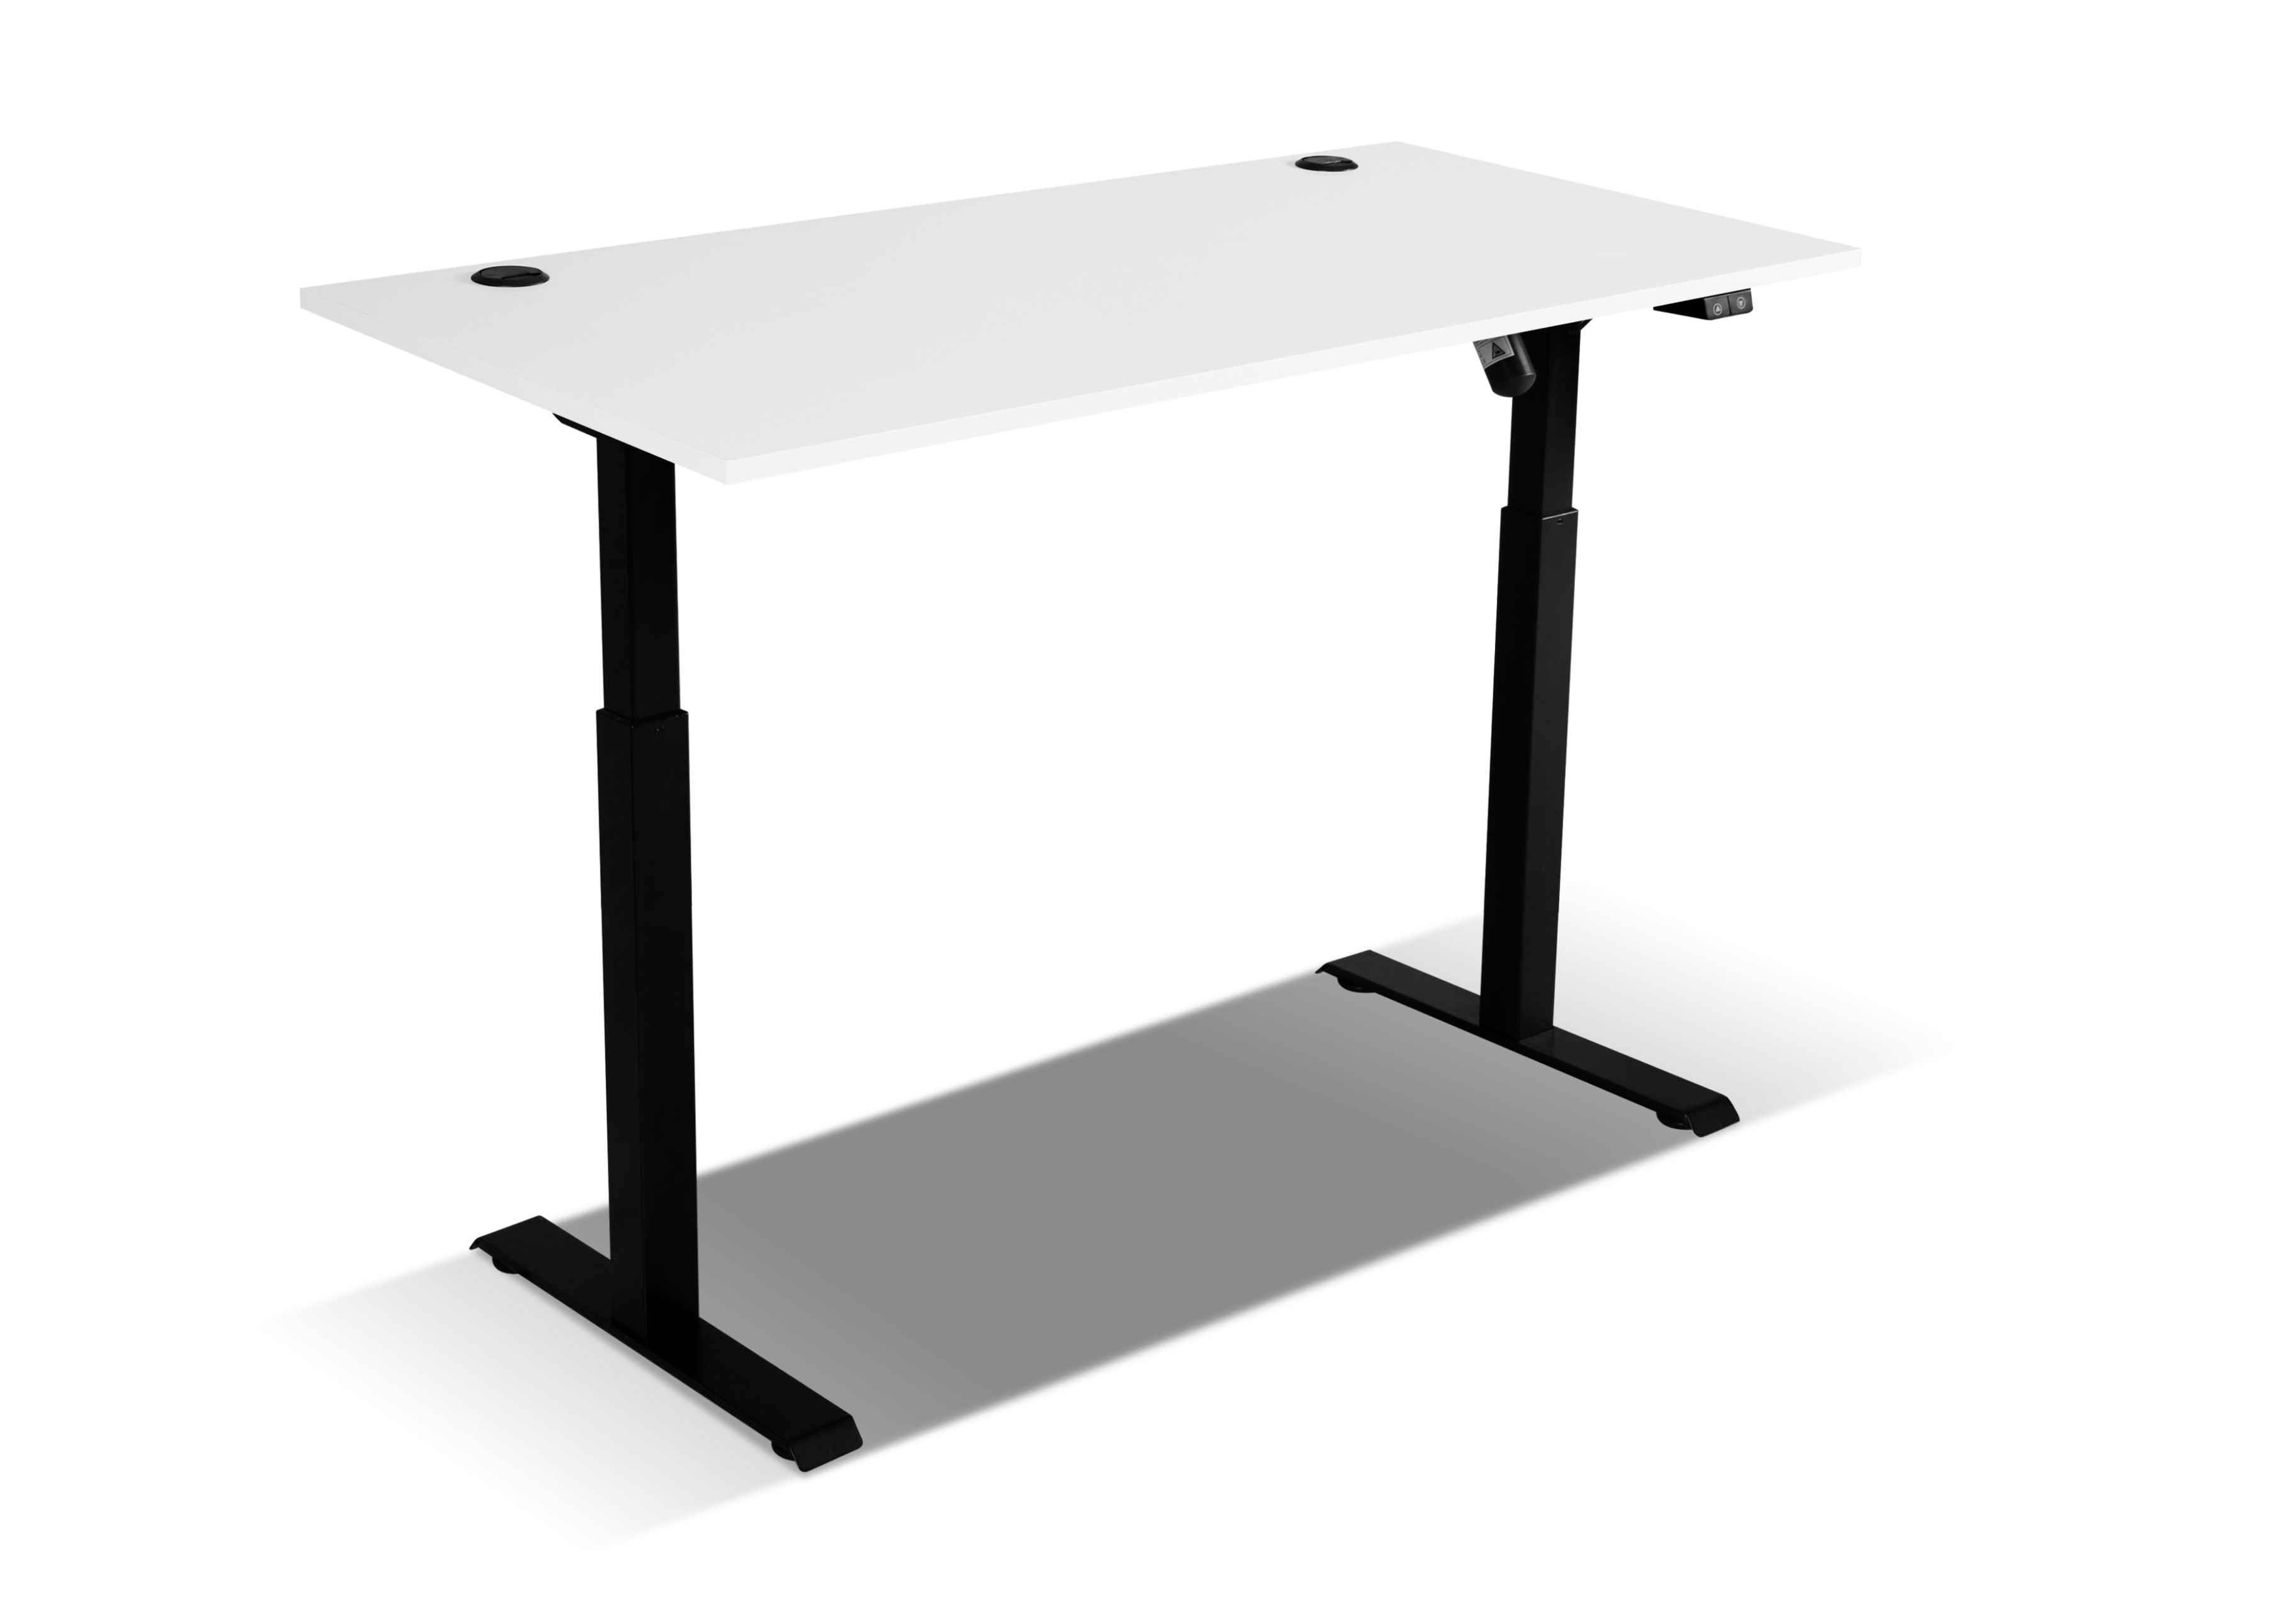 Furnix Schreibtisch MOLUKI 151 Stehschreibtisch-Funktion Hellgrau mit Büro-Tisch, Steuermodul cm 70-118 höhenverstellbar